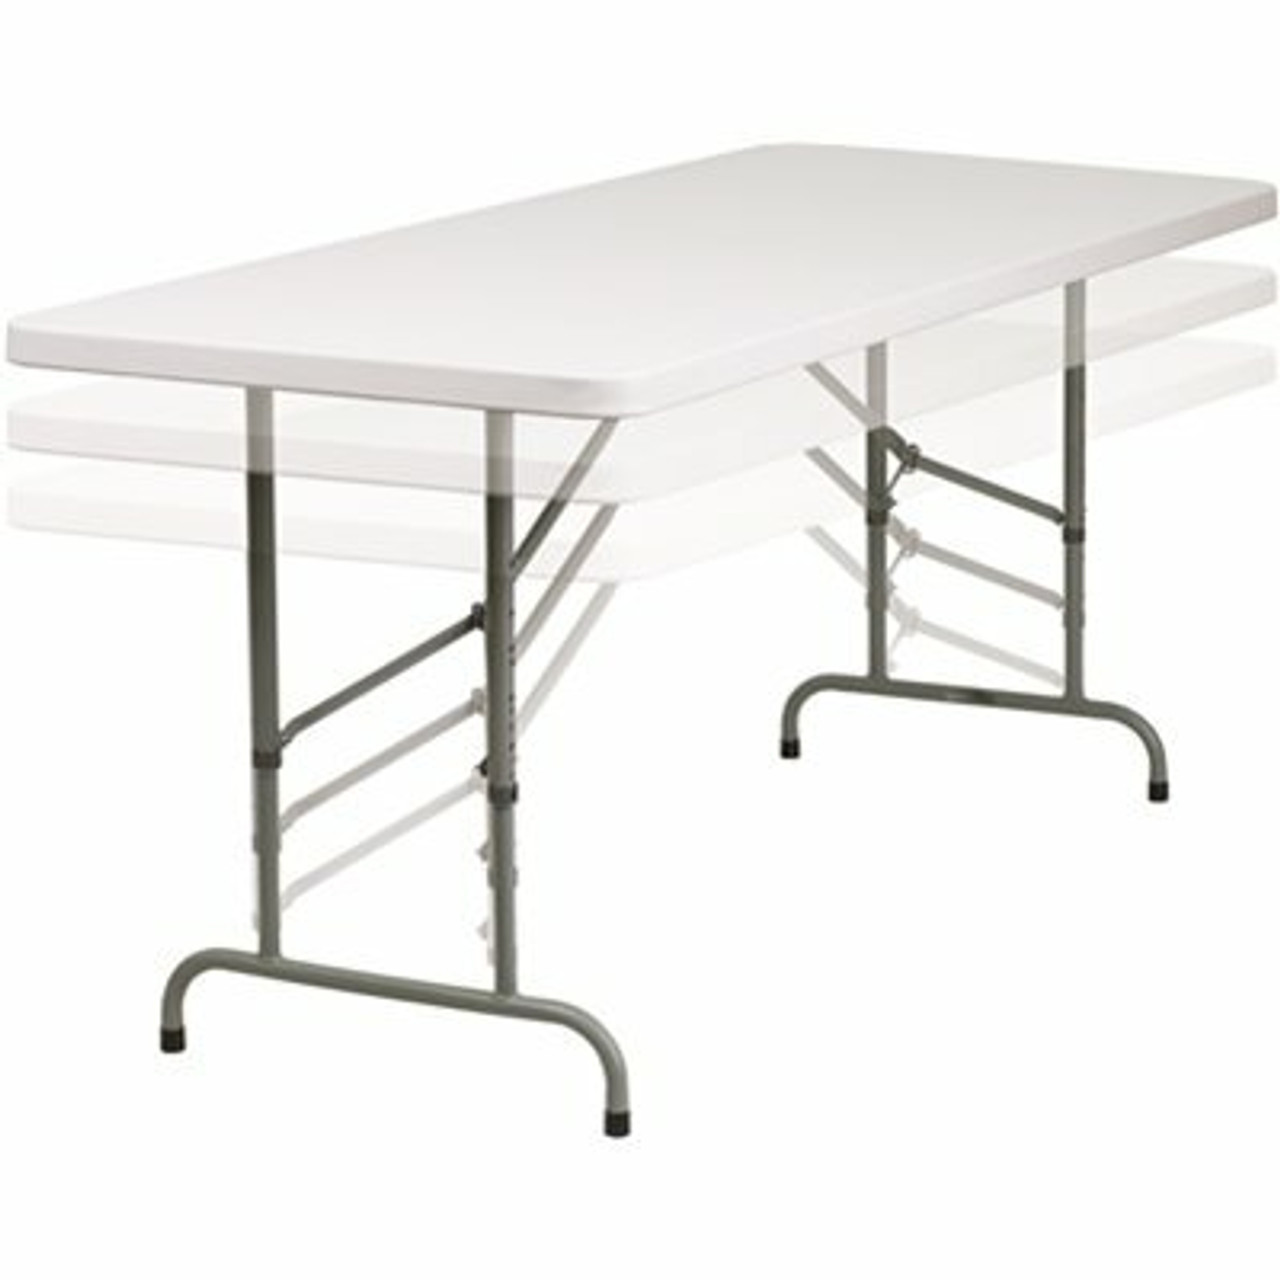 72 In. Granite White Plastic Tabletop Metal Frame Folding Table - 308688193